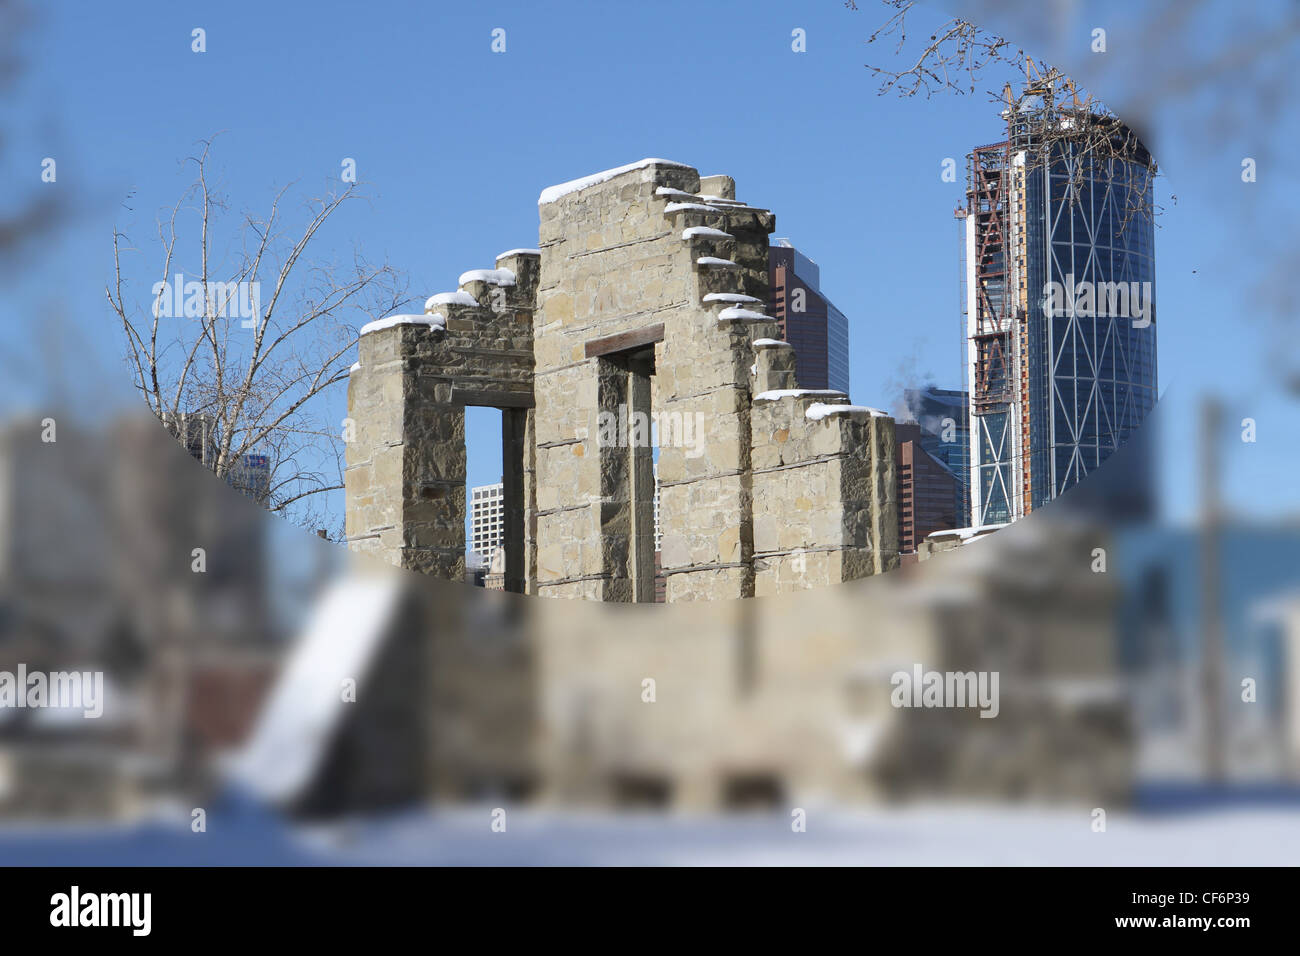 Los restos de los primeros Hospital General en el centro de Calgary, Alberta, con vistas de la ciudad en el fondo. Foto de stock